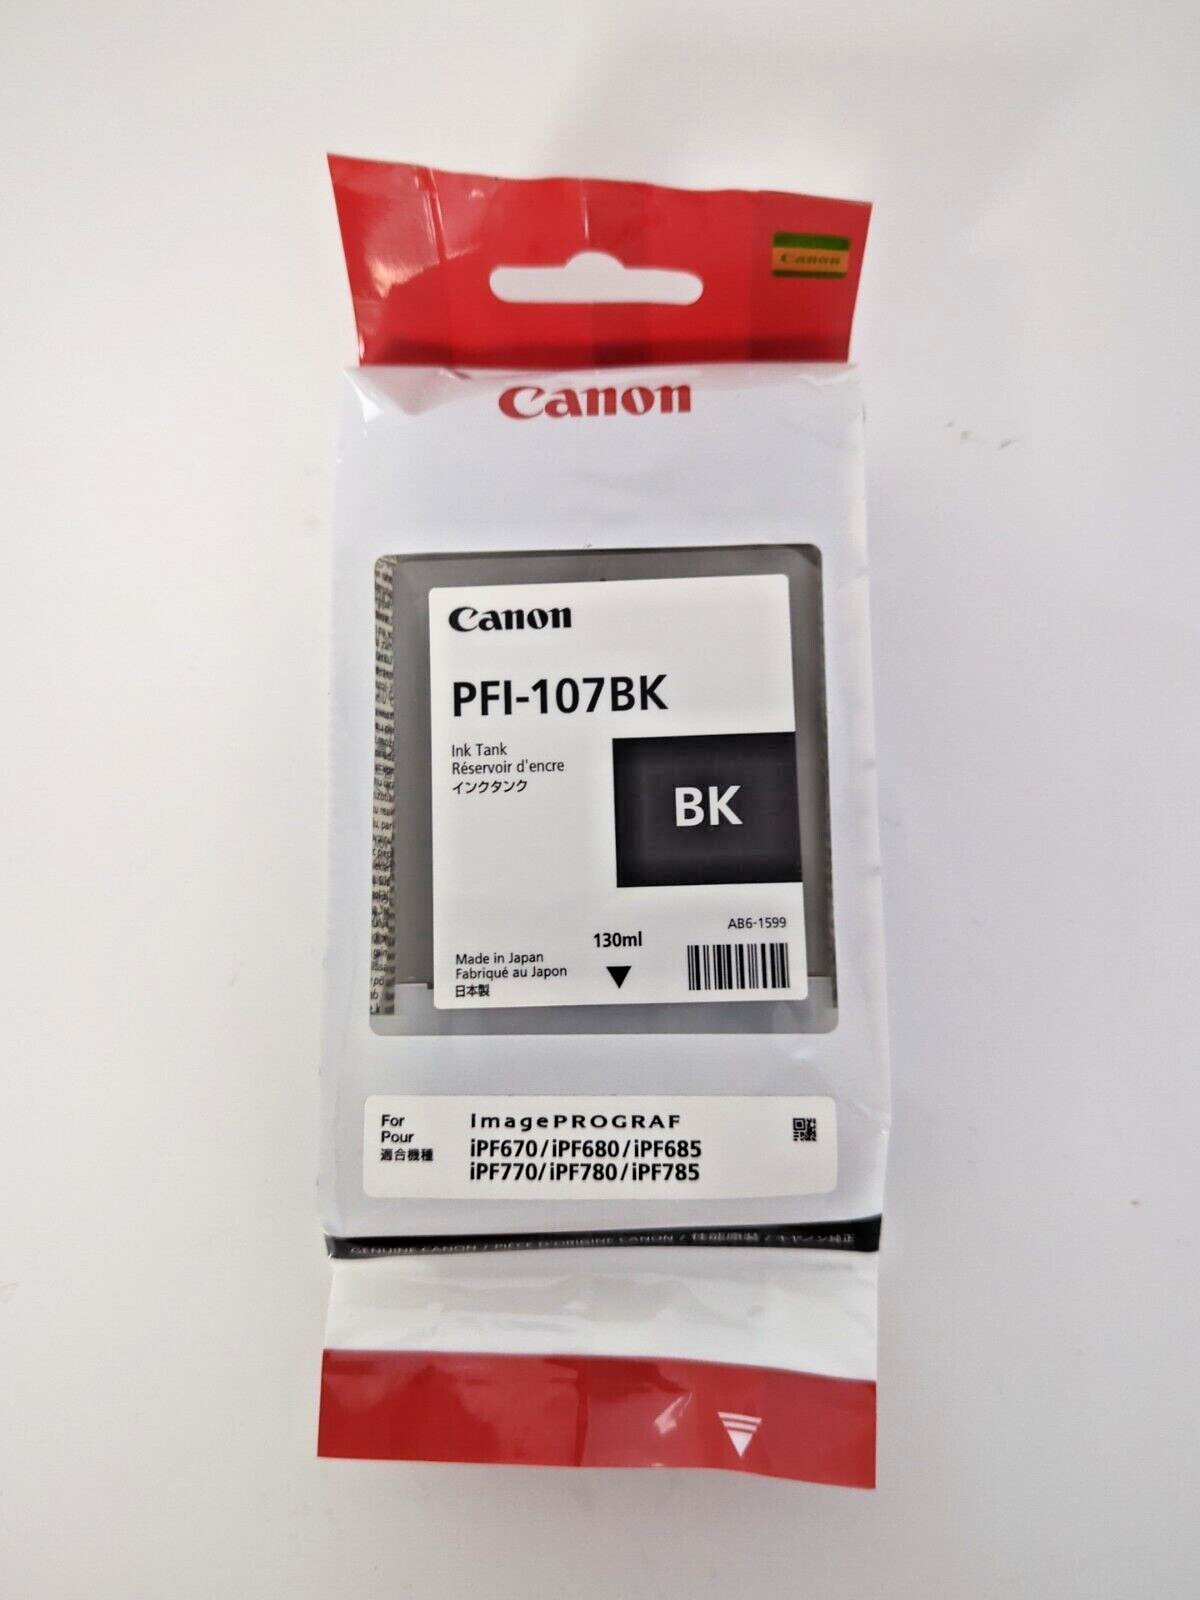 CANON PFI-107BK 130ml EXP. 2023 BLACK